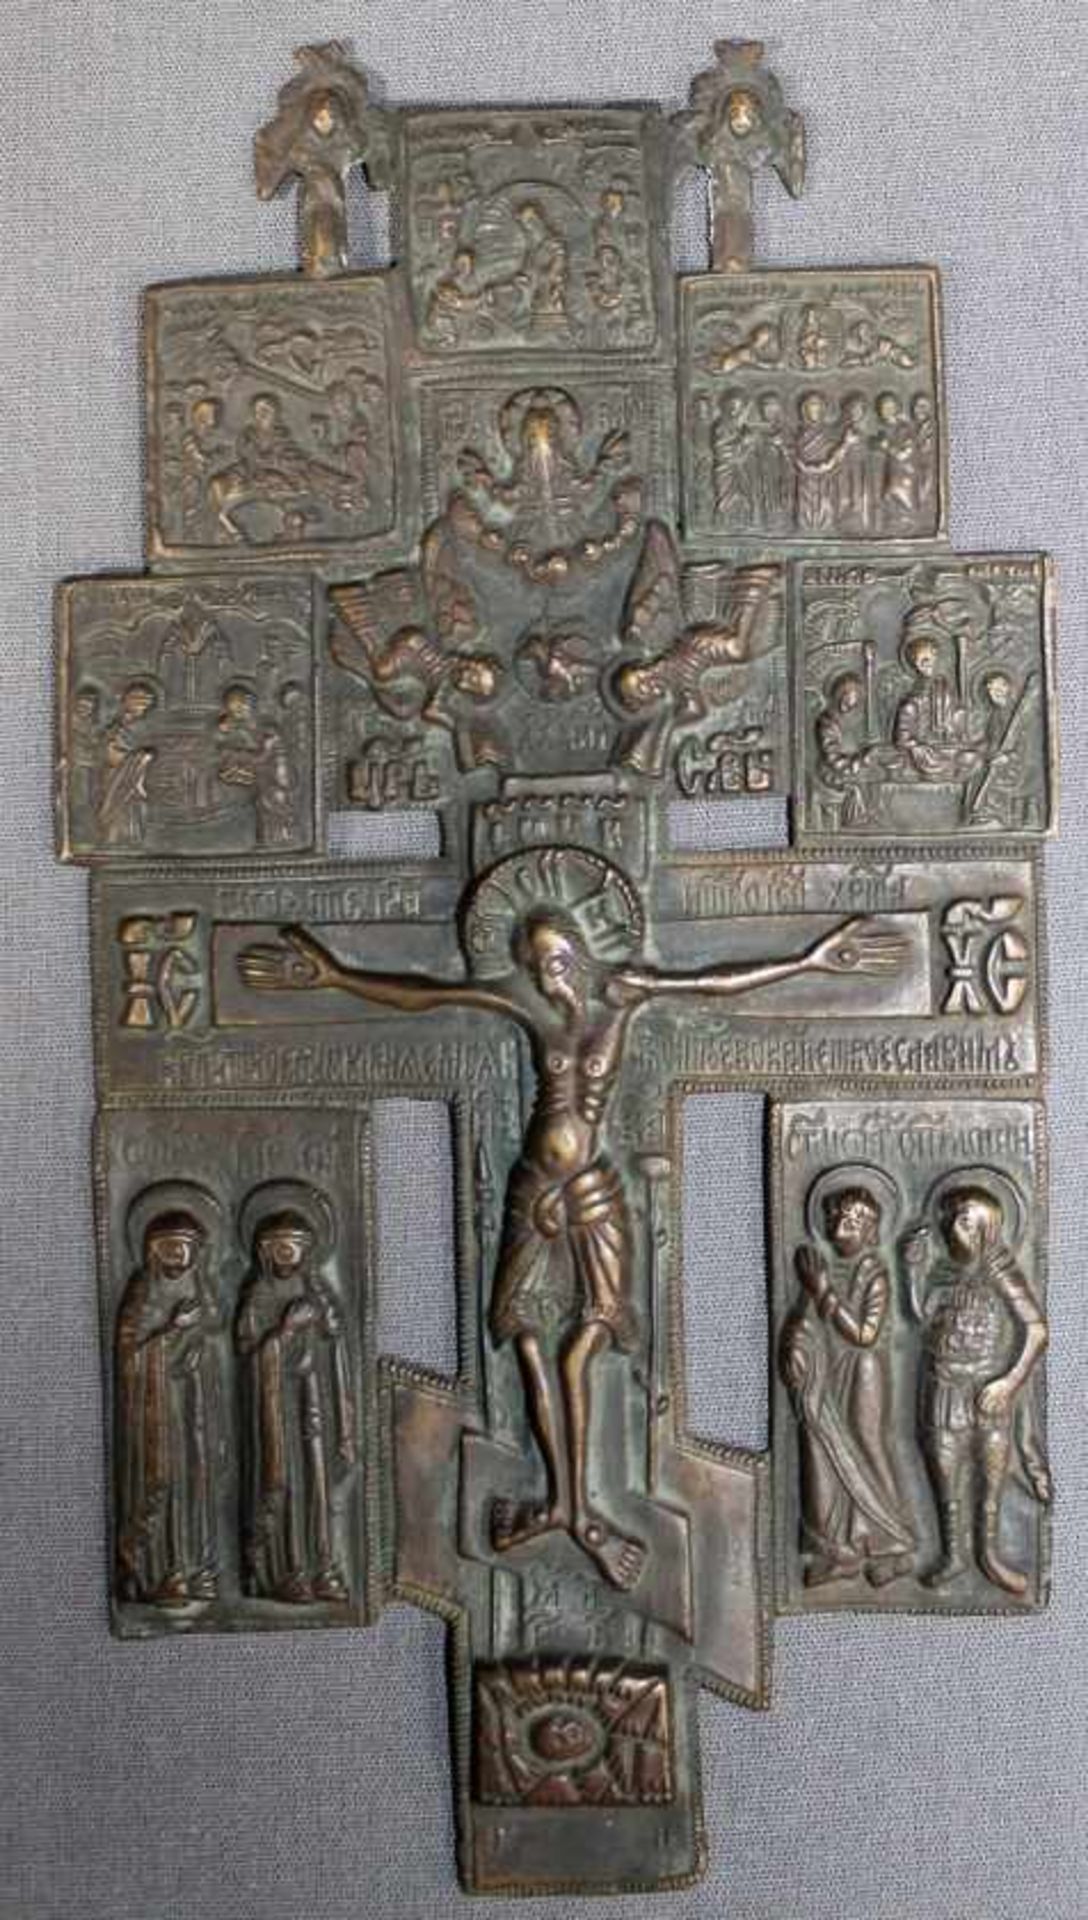 1 Haussegenskreuz Bronze, ca. 20,5cm x 11cm- - -23.50 % buyer's premium on the hammer price, VAT